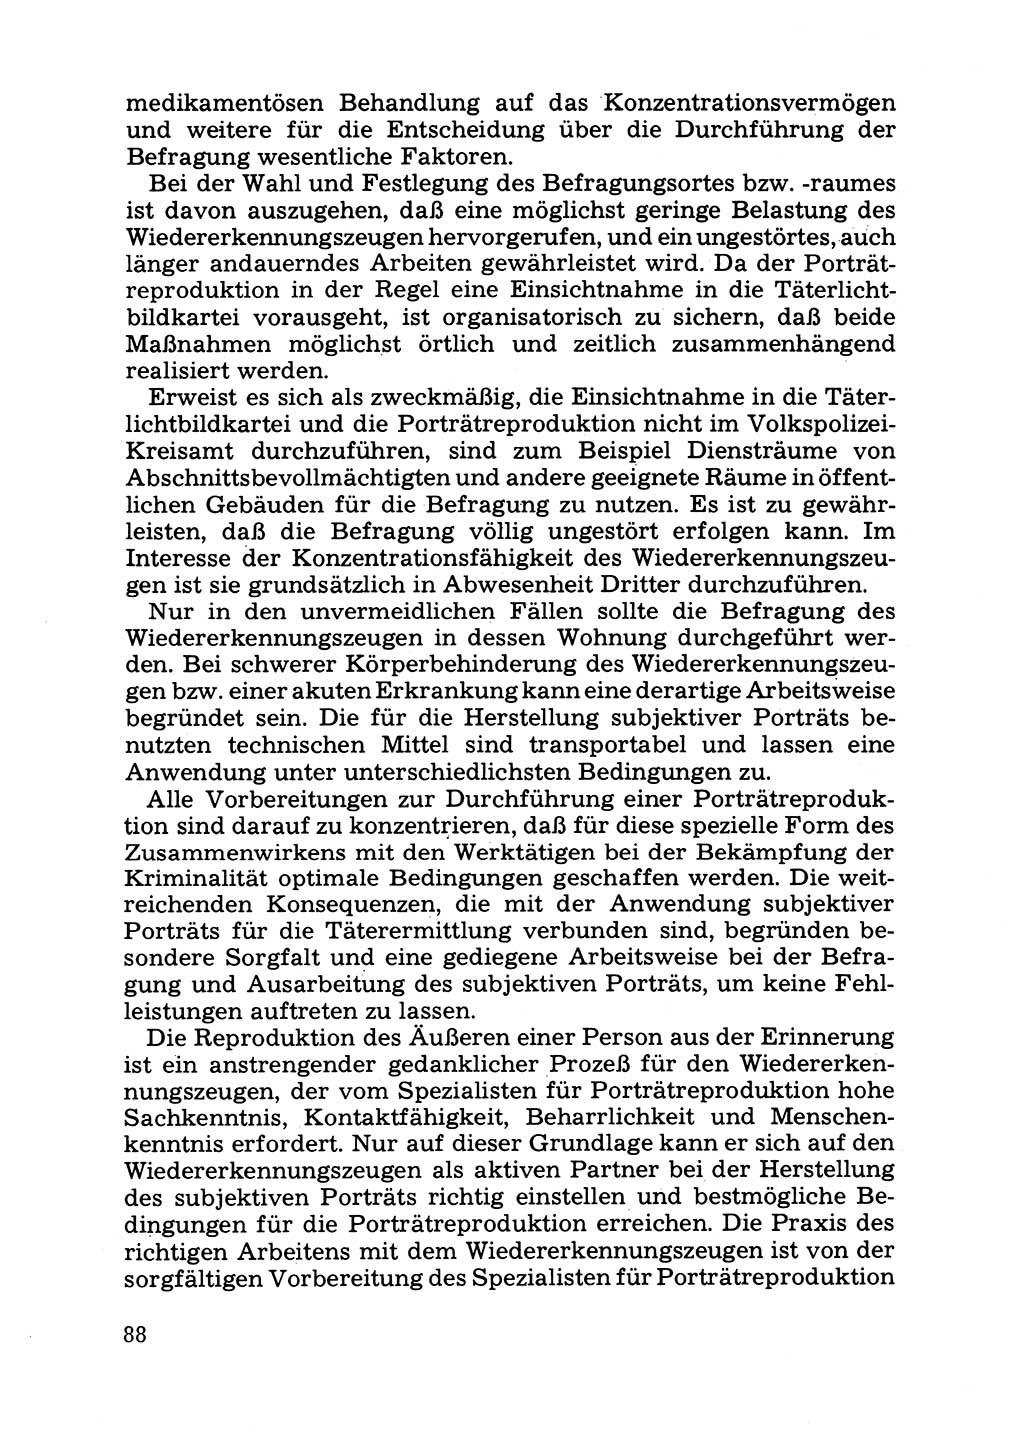 Das subjektive Porträt [Deutsche Demokratische Republik (DDR)] 1981, Seite 88 (Subj. Port. DDR 1981, S. 88)